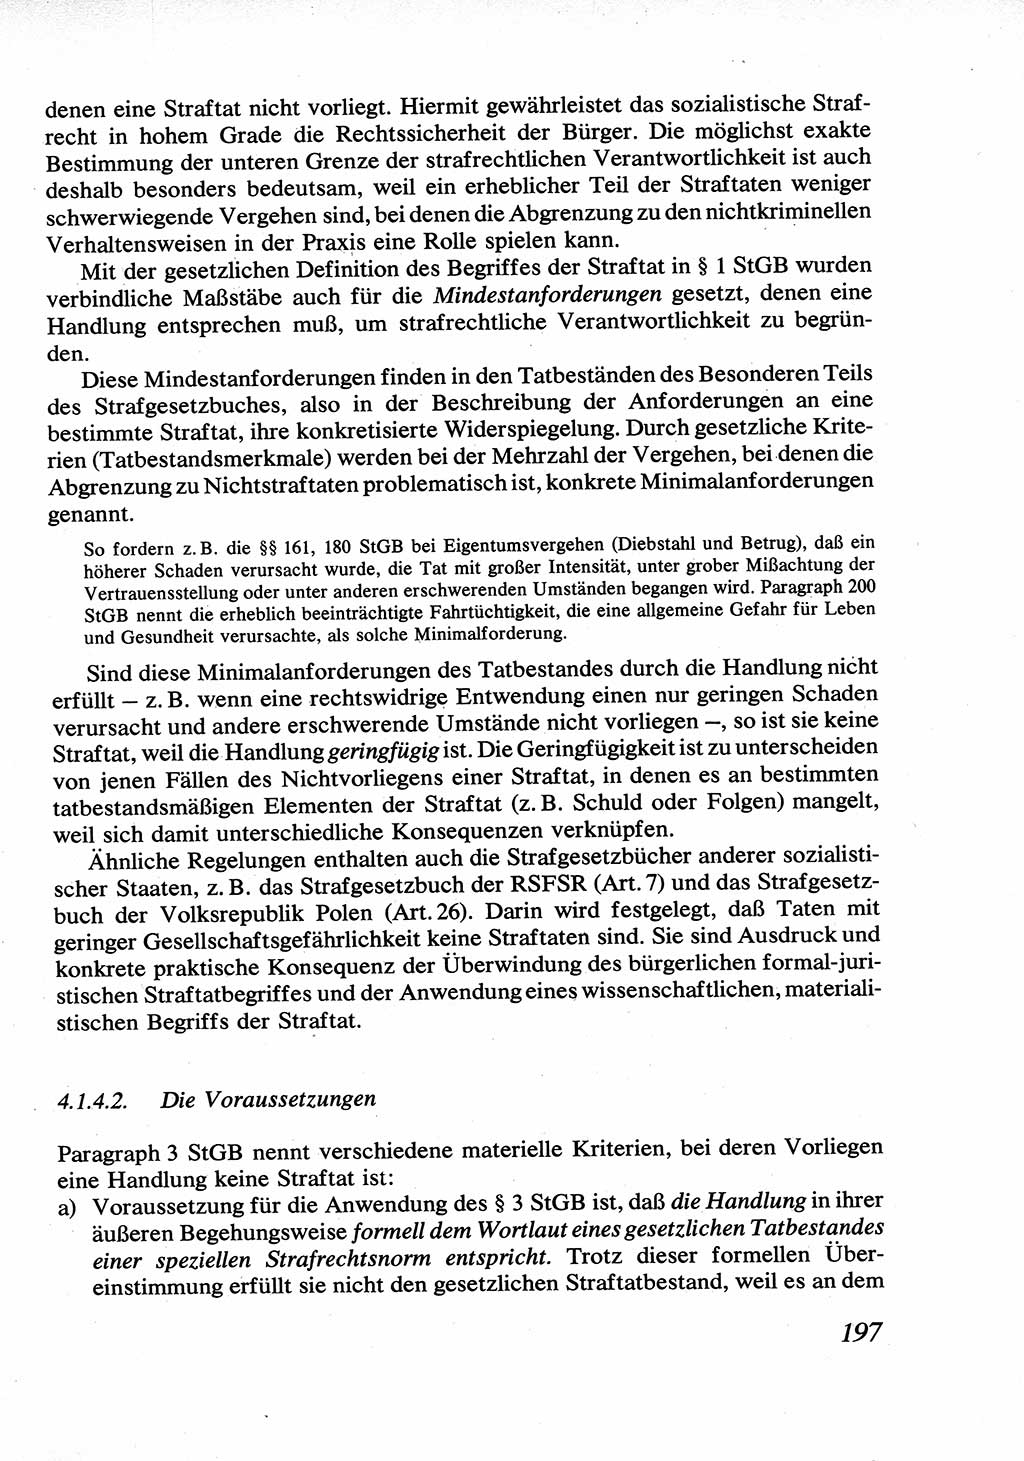 Strafrecht [Deutsche Demokratische Republik (DDR)], Allgemeiner Teil, Lehrbuch 1976, Seite 197 (Strafr. DDR AT Lb. 1976, S. 197)